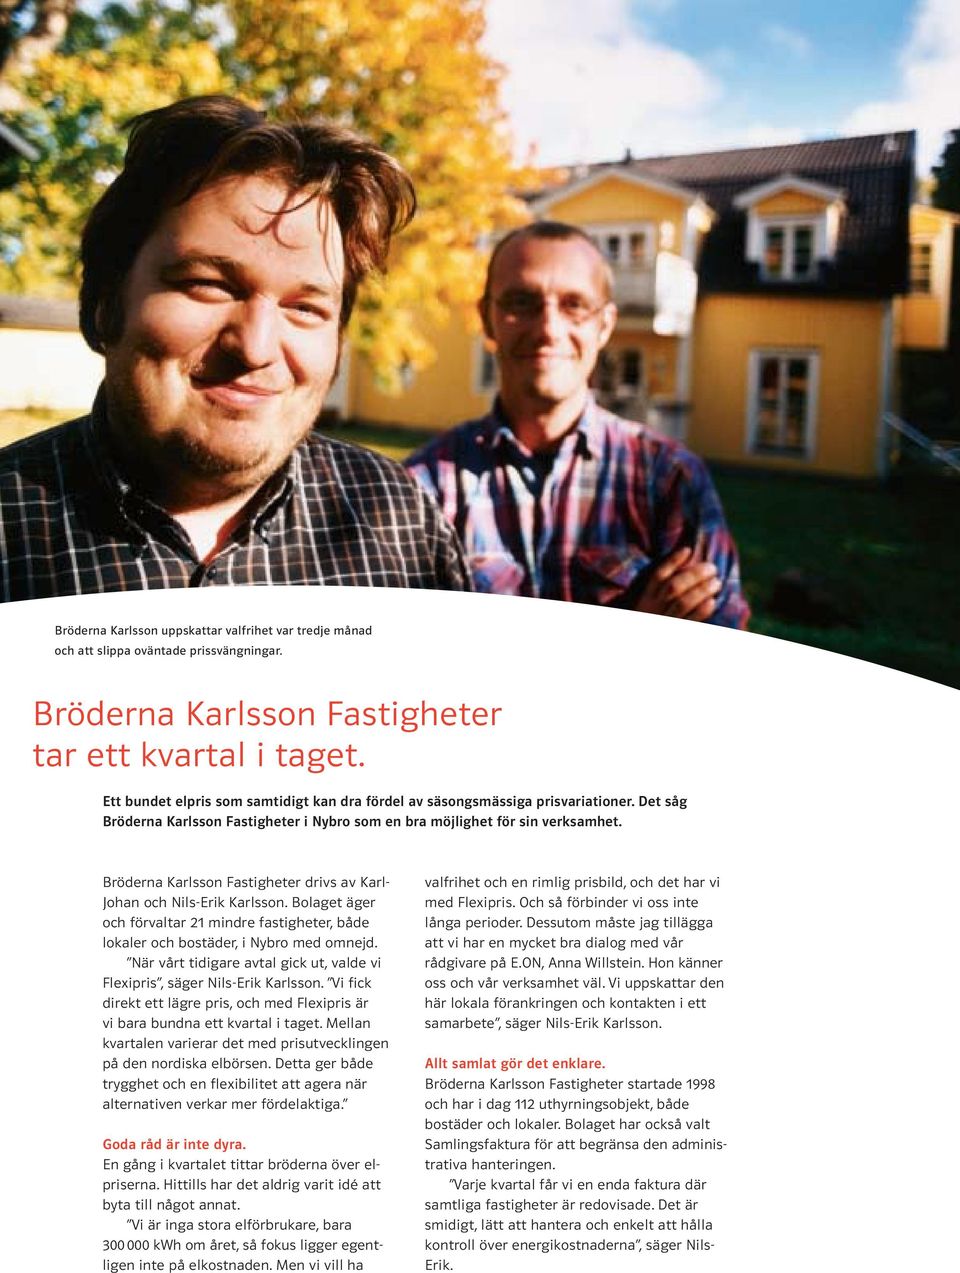 Bröderna Karlsson Fastigheter drivs av Karl- Johan och Nils-Erik Karlsson. Bolaget äger och förvaltar 21 mindre fastigheter, både lokaler och bostäder, i Nybro med omnejd.